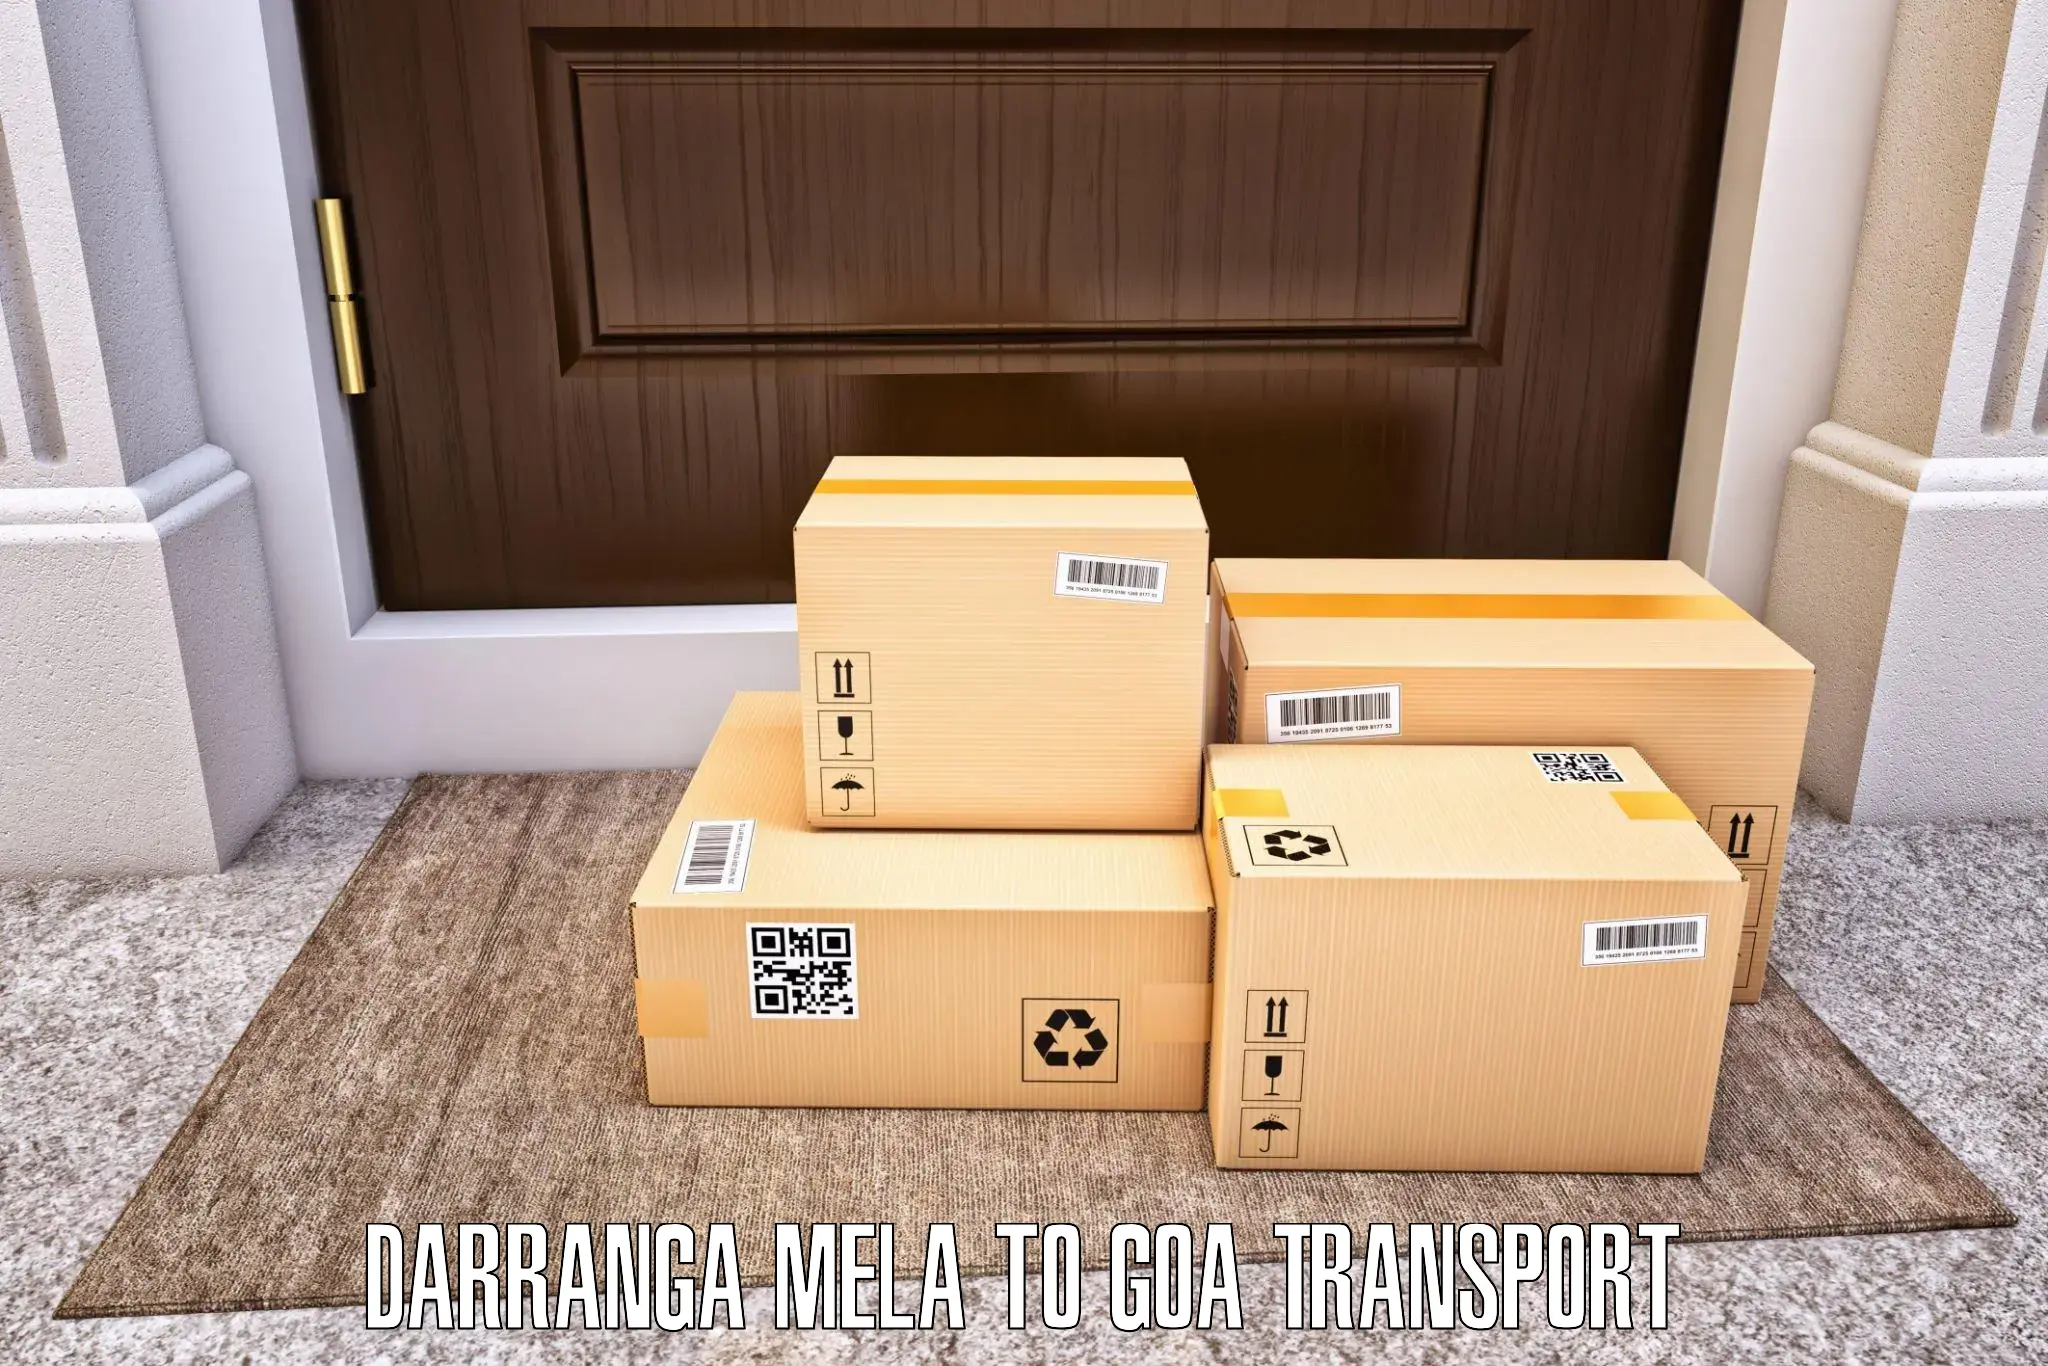 Lorry transport service Darranga Mela to Canacona